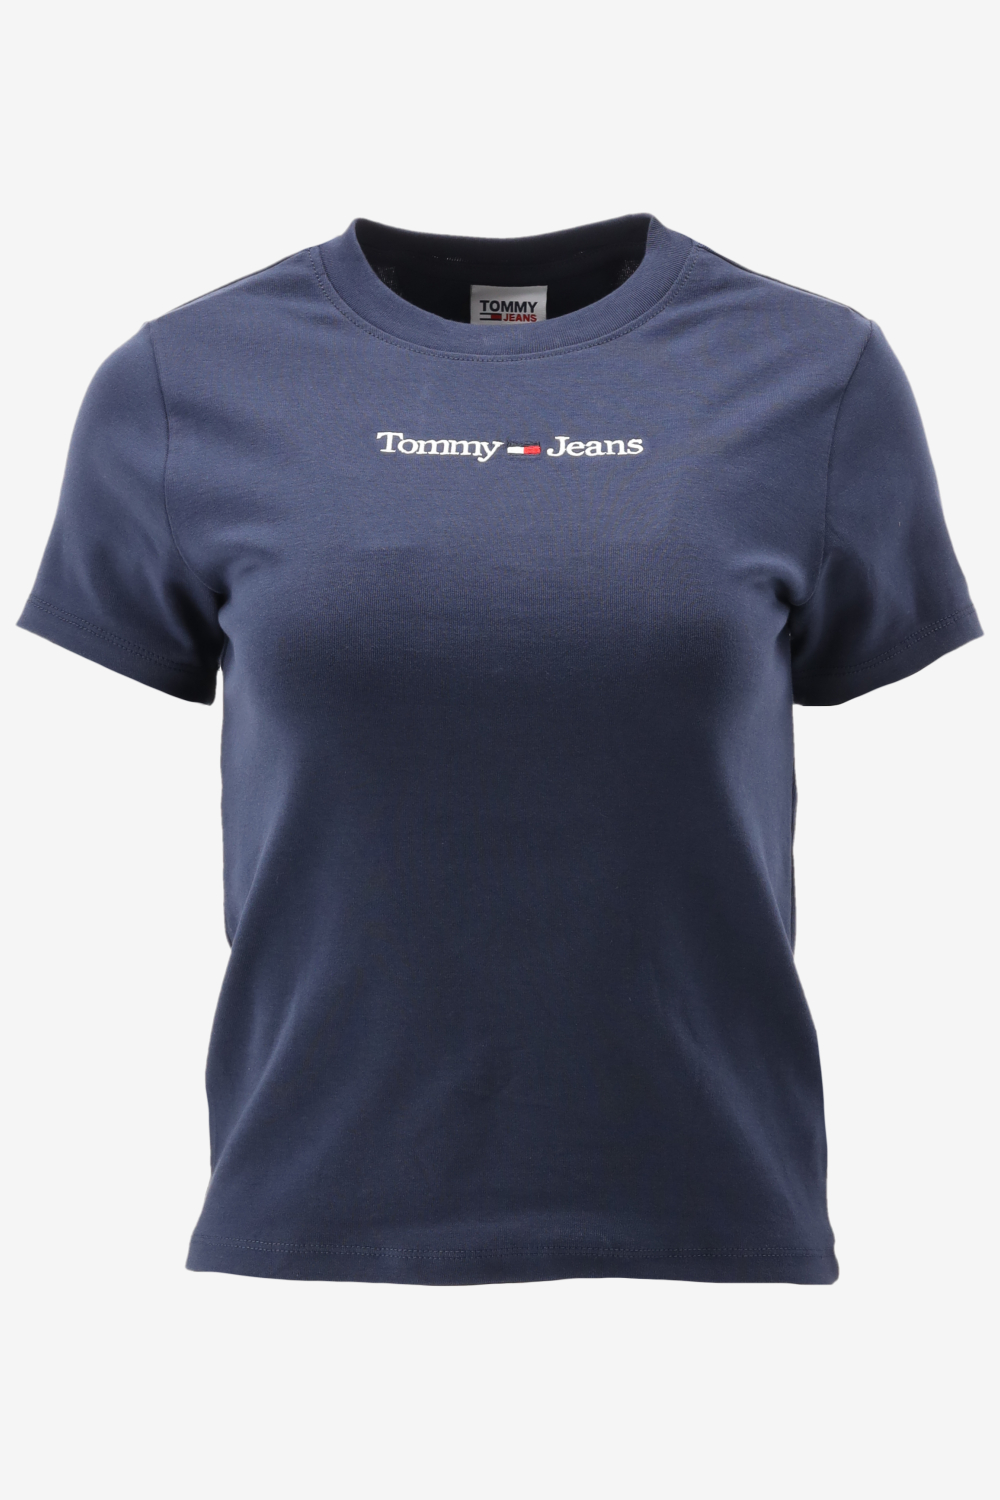 Tommy Hilfiger TJW BABY SERIF LINEAR SS Dames T-shirt - Blauw - Maat XL